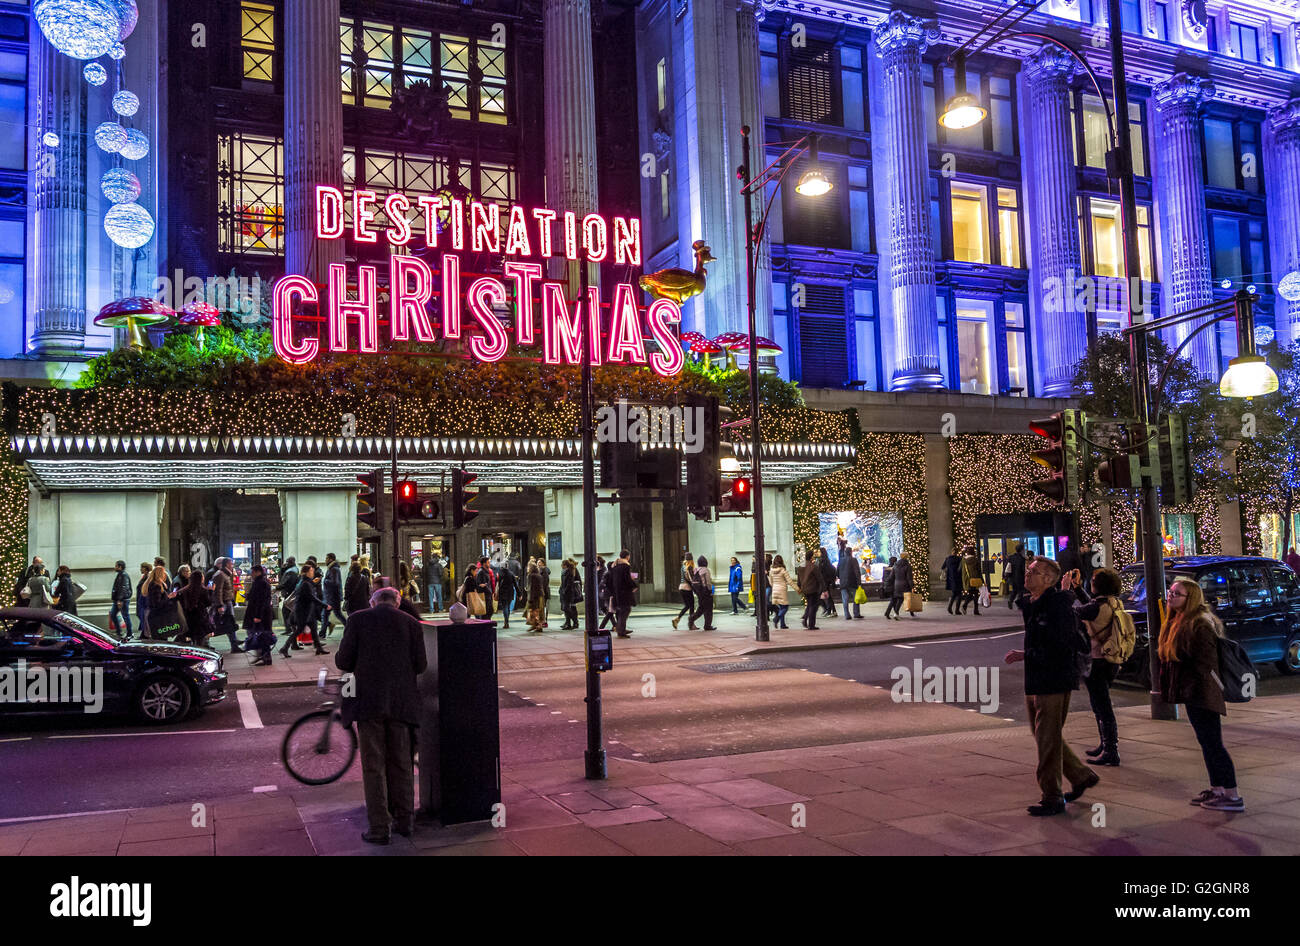 Cartello al neon 'Demination Christmas' sopra l'entrata principale del grande magazzino Selfridges su Oxford St di Londra, occupato da amanti dello shopping natalizio, Londra Foto Stock